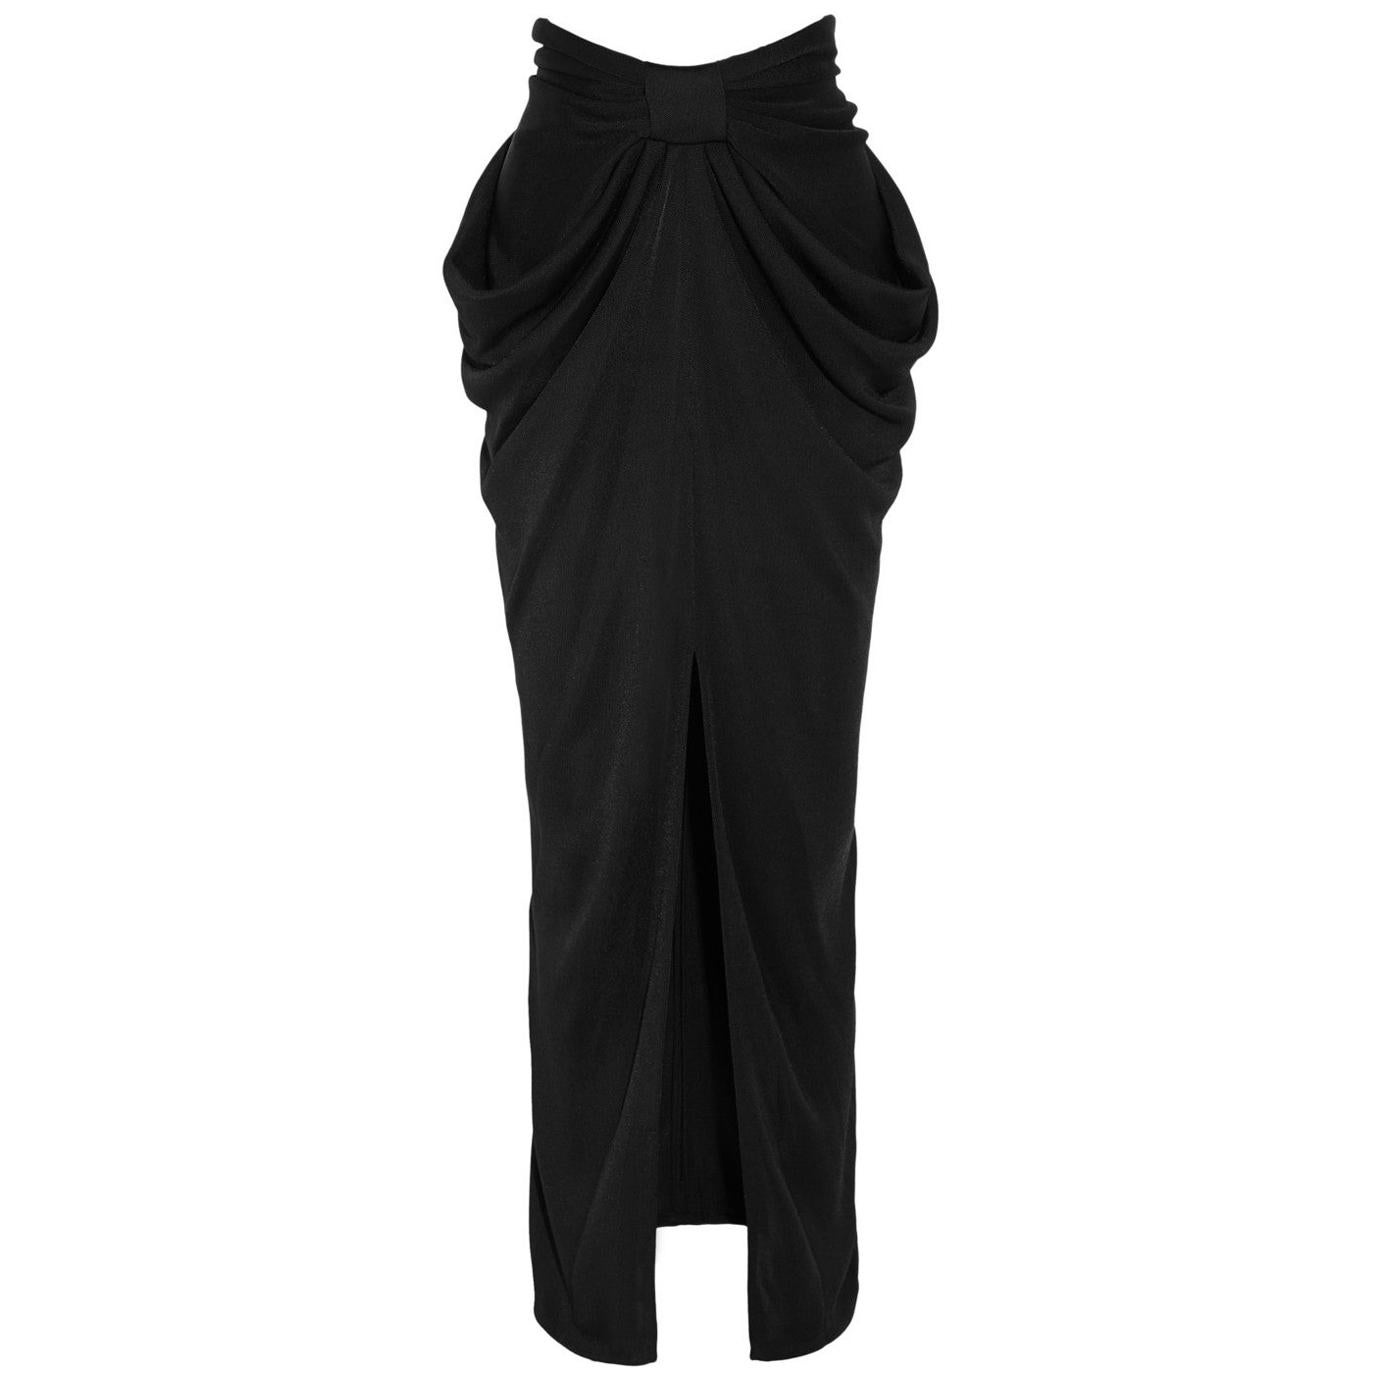 Balmain Black Dinner Dress. For Sale at 1stDibs